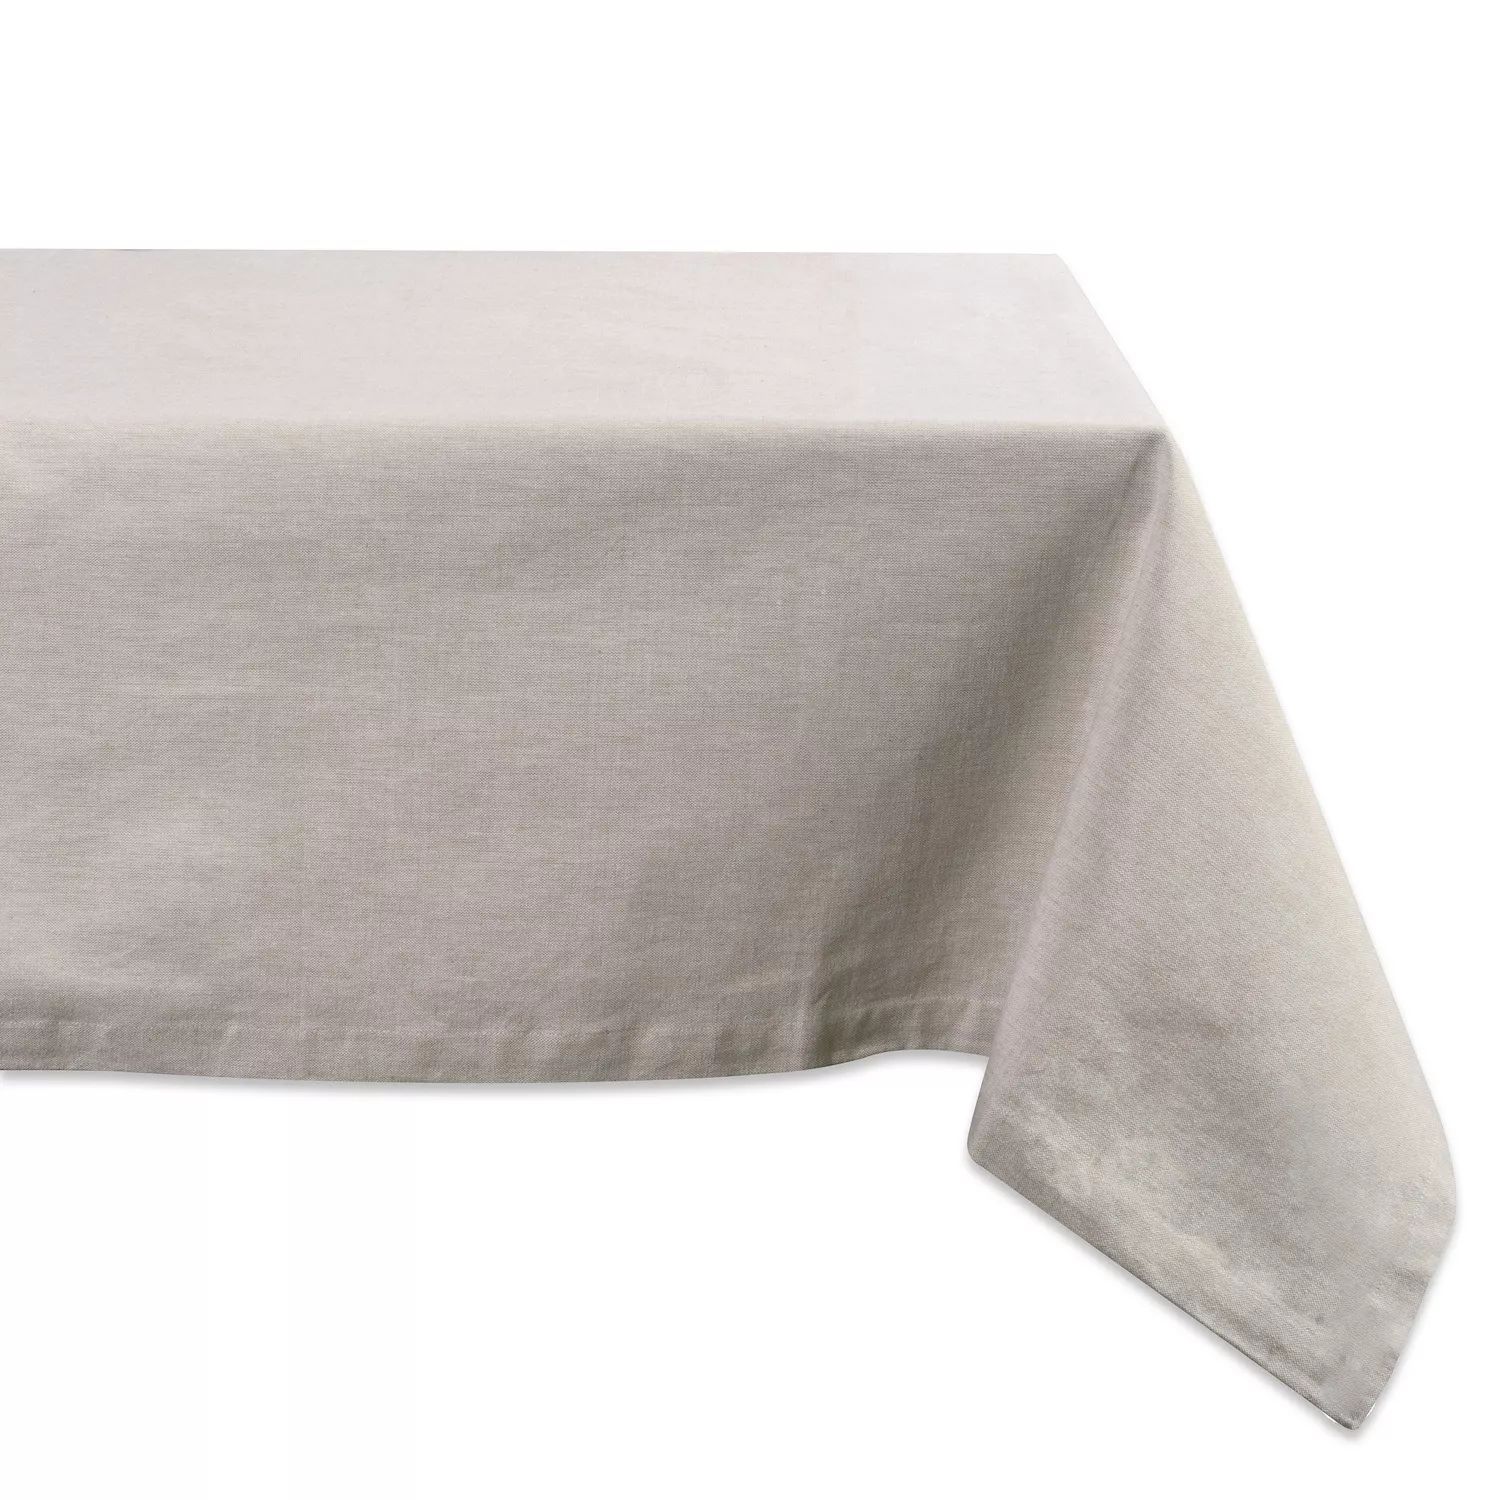 Кремово-белая прямоугольная скатерть 60 x 120 дюймов